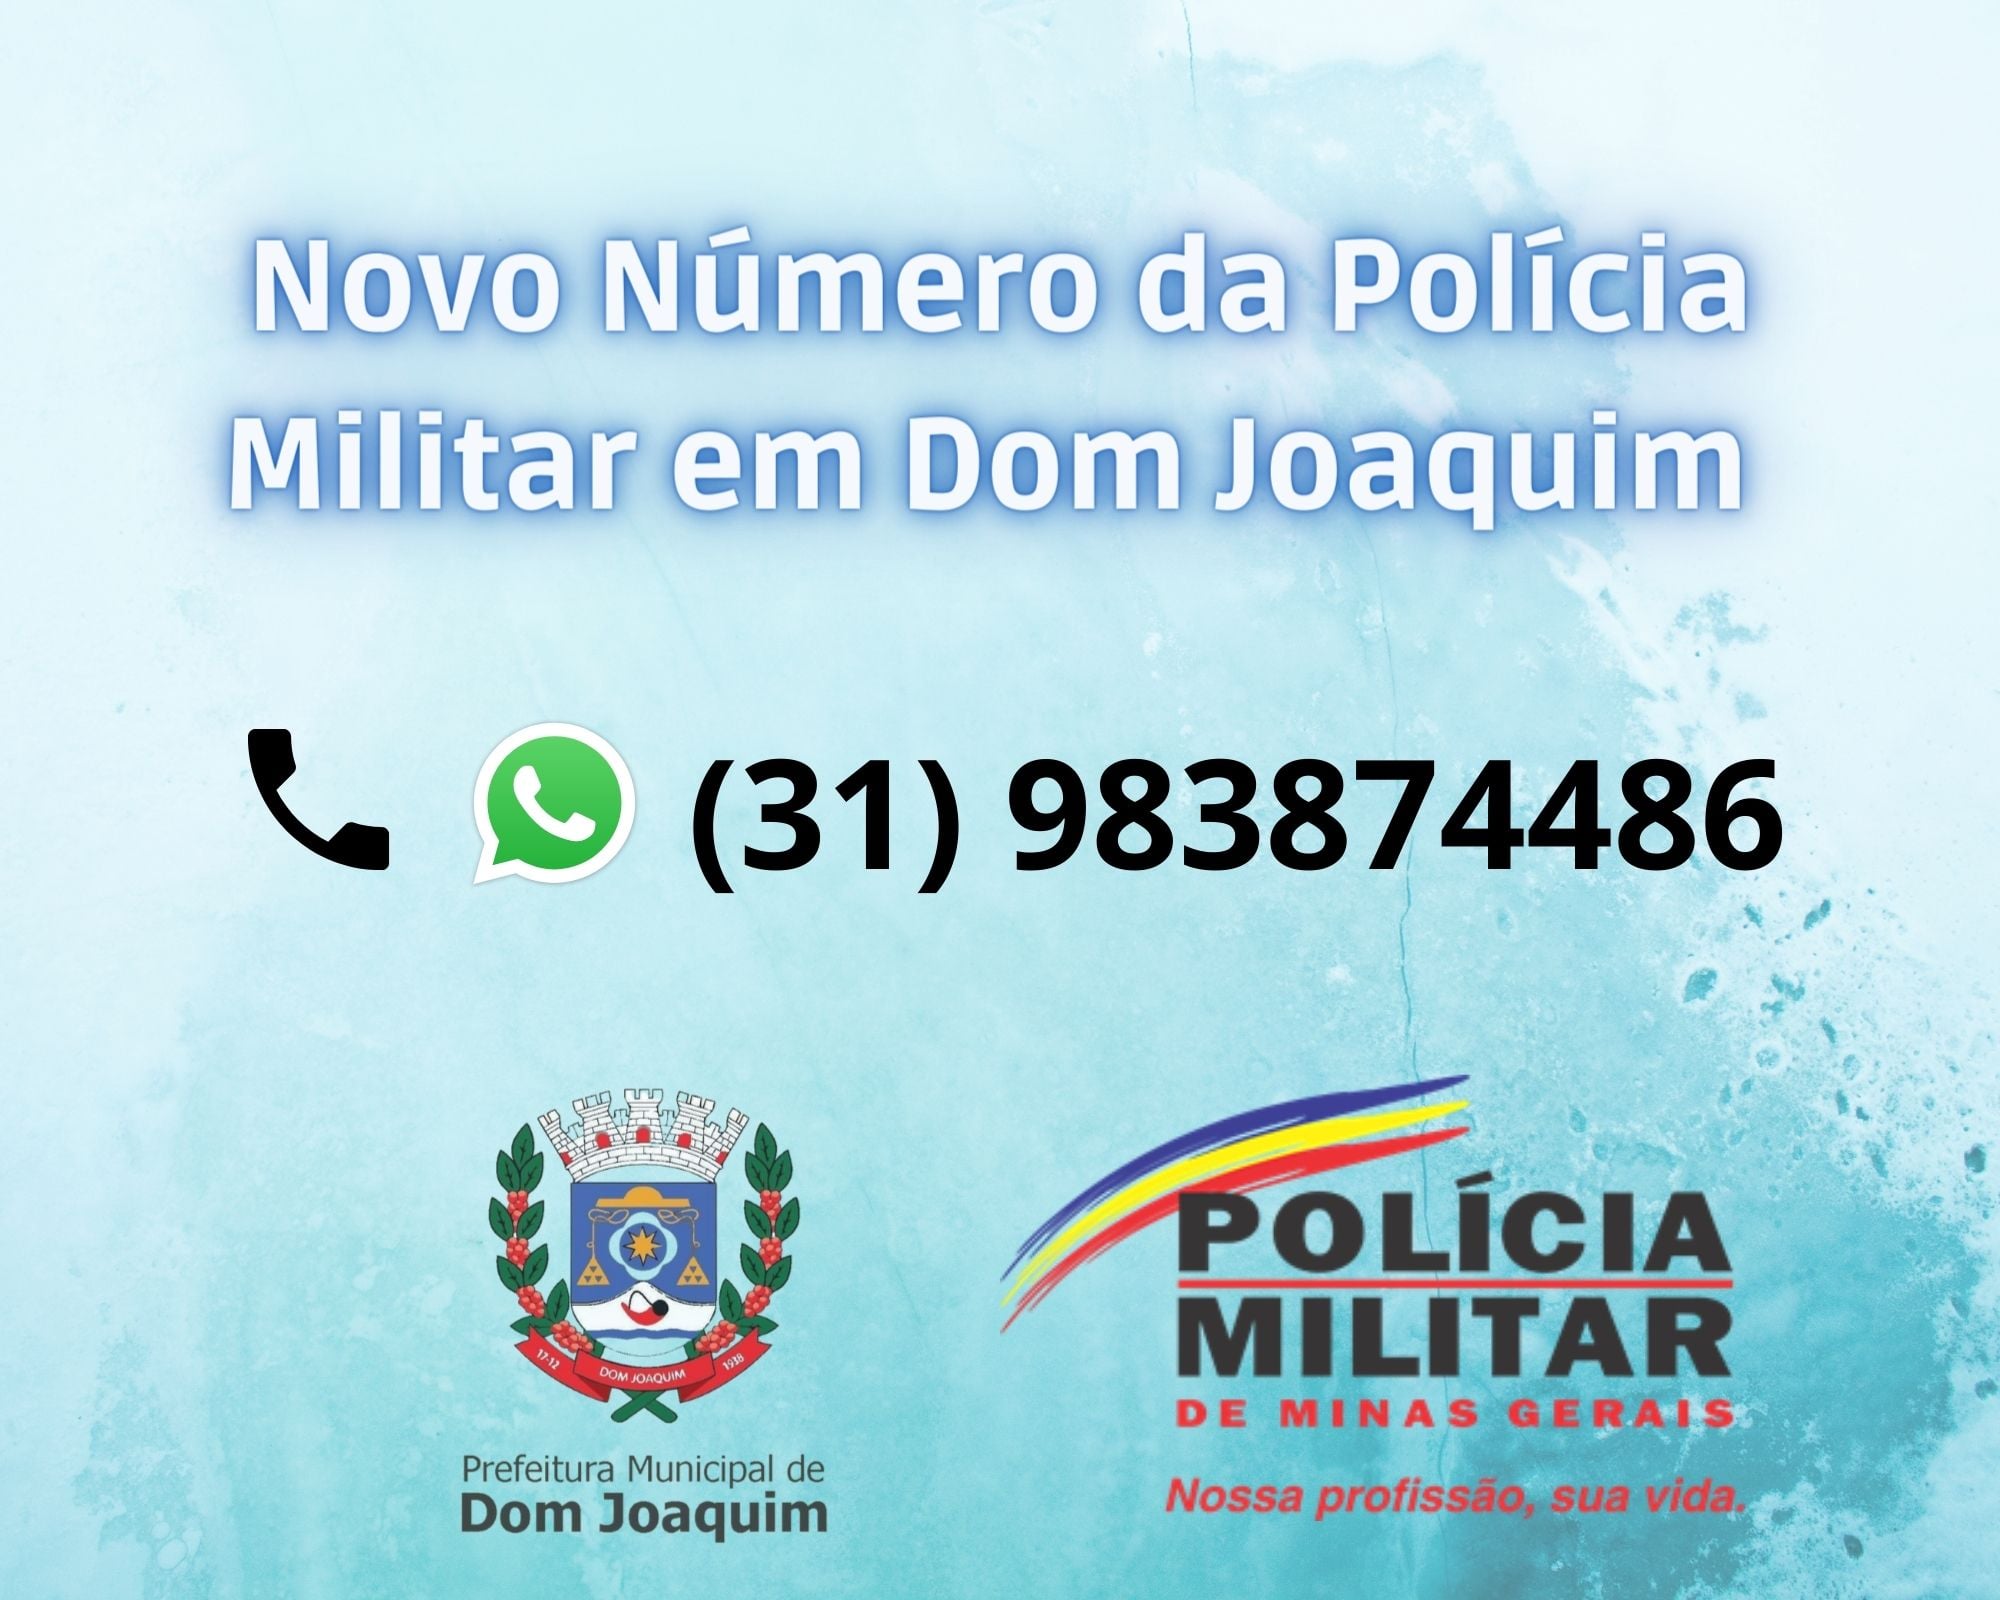 You are currently viewing A Prefeitura de Dom Joaquim vem divulgar o novo número corporativo da Polícia Militar